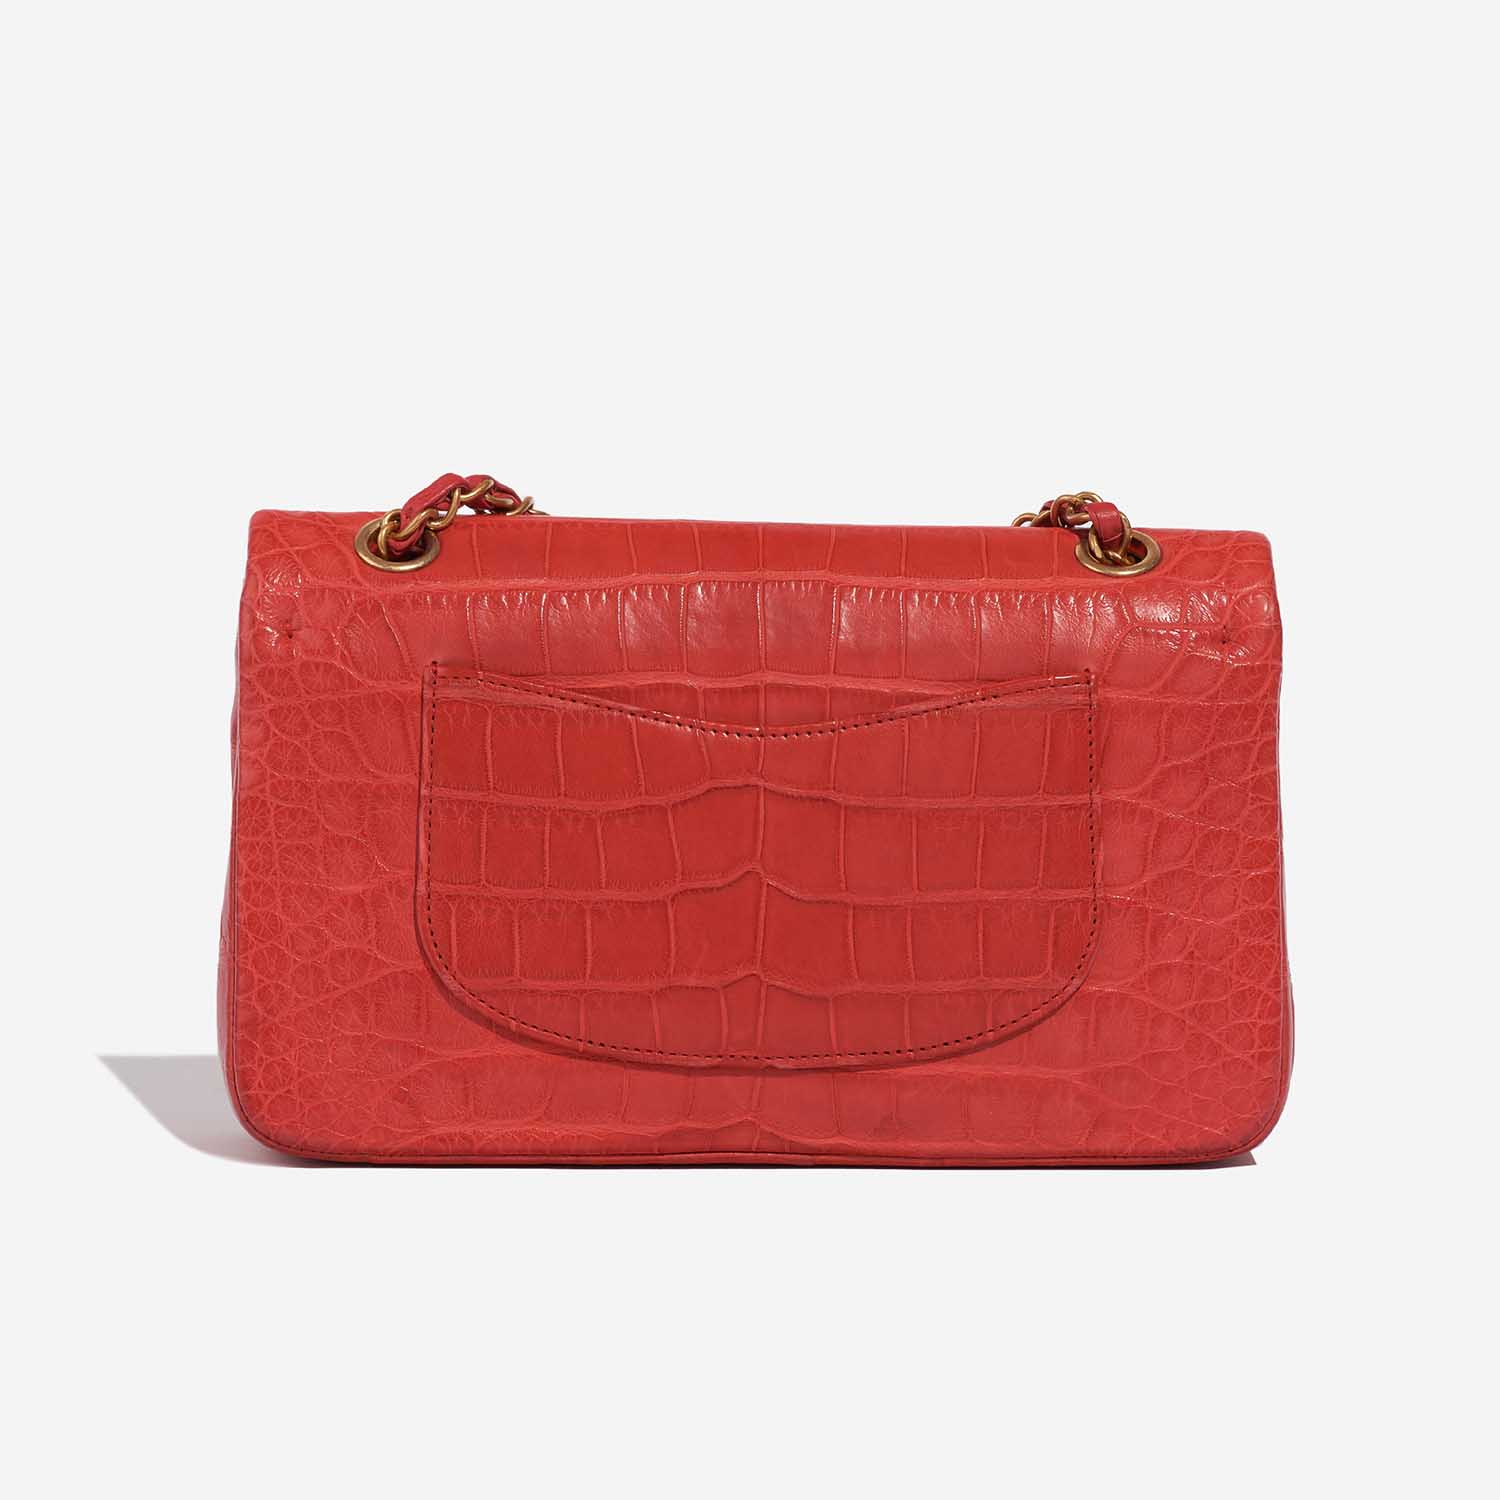 Chanel Timeless Medium Rot 5B S | Verkaufen Sie Ihre Designer-Tasche auf Saclab.com